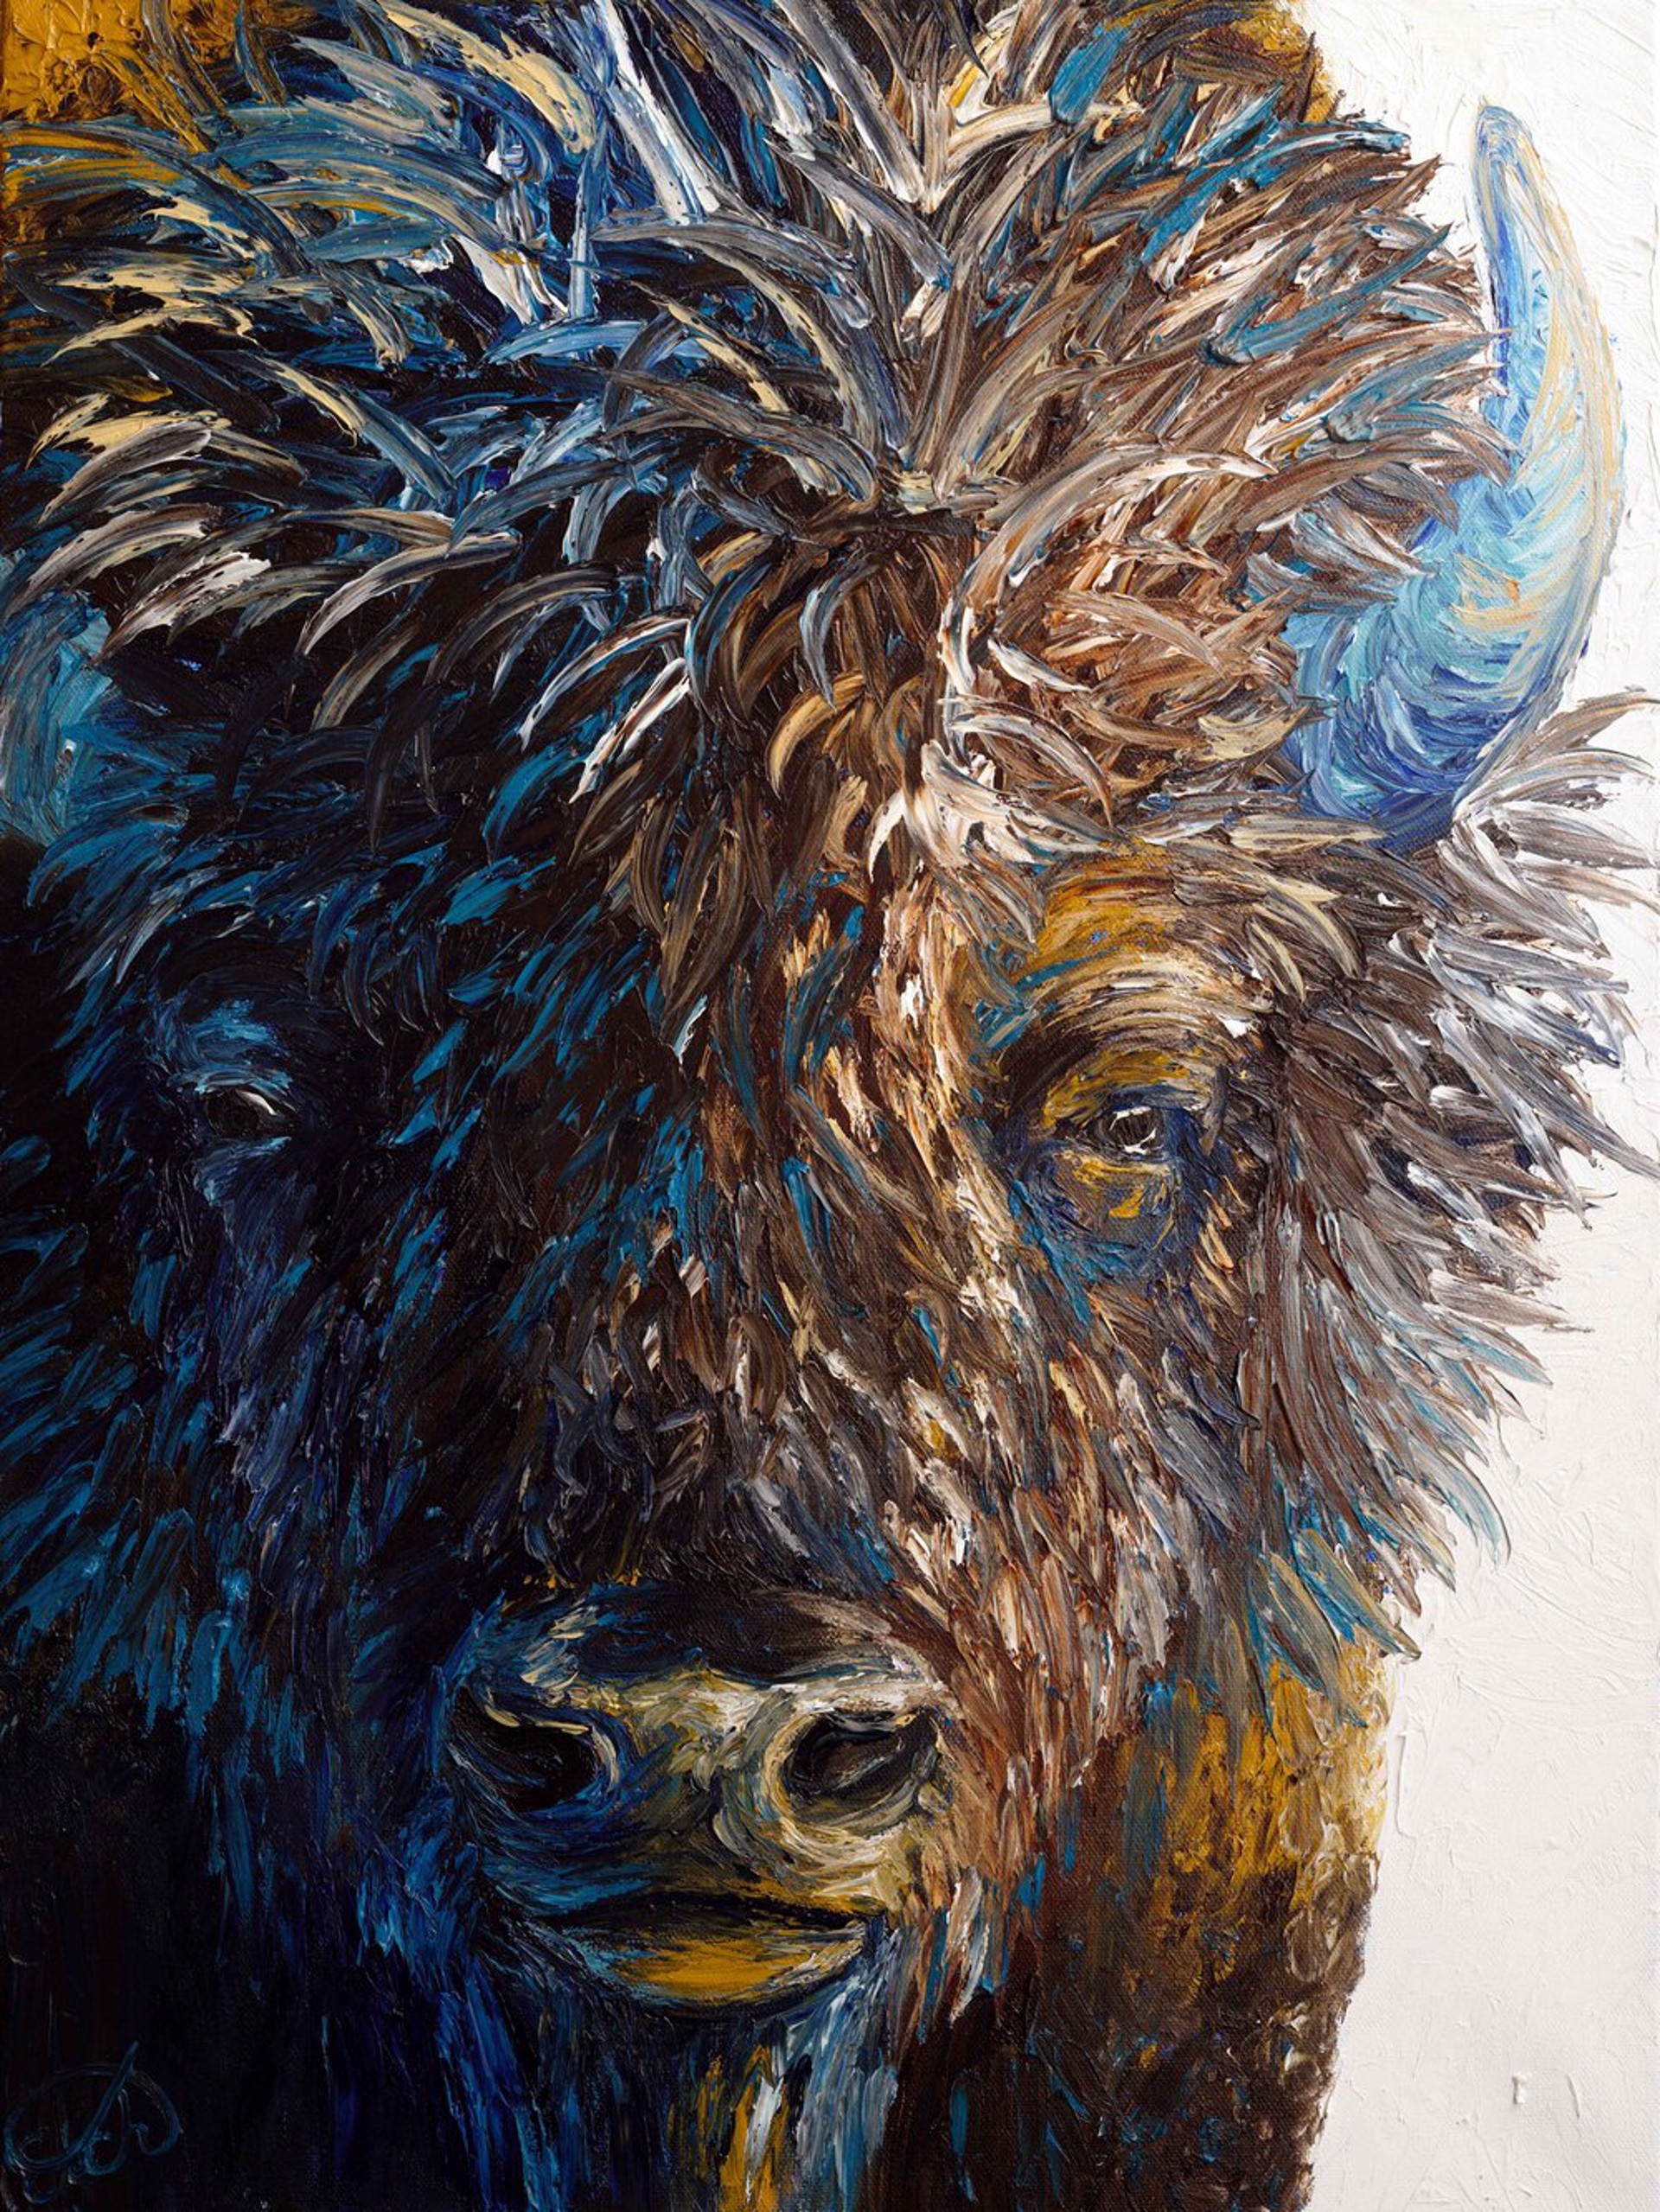 Portrait of a Bison by Elizabeth Mordensky